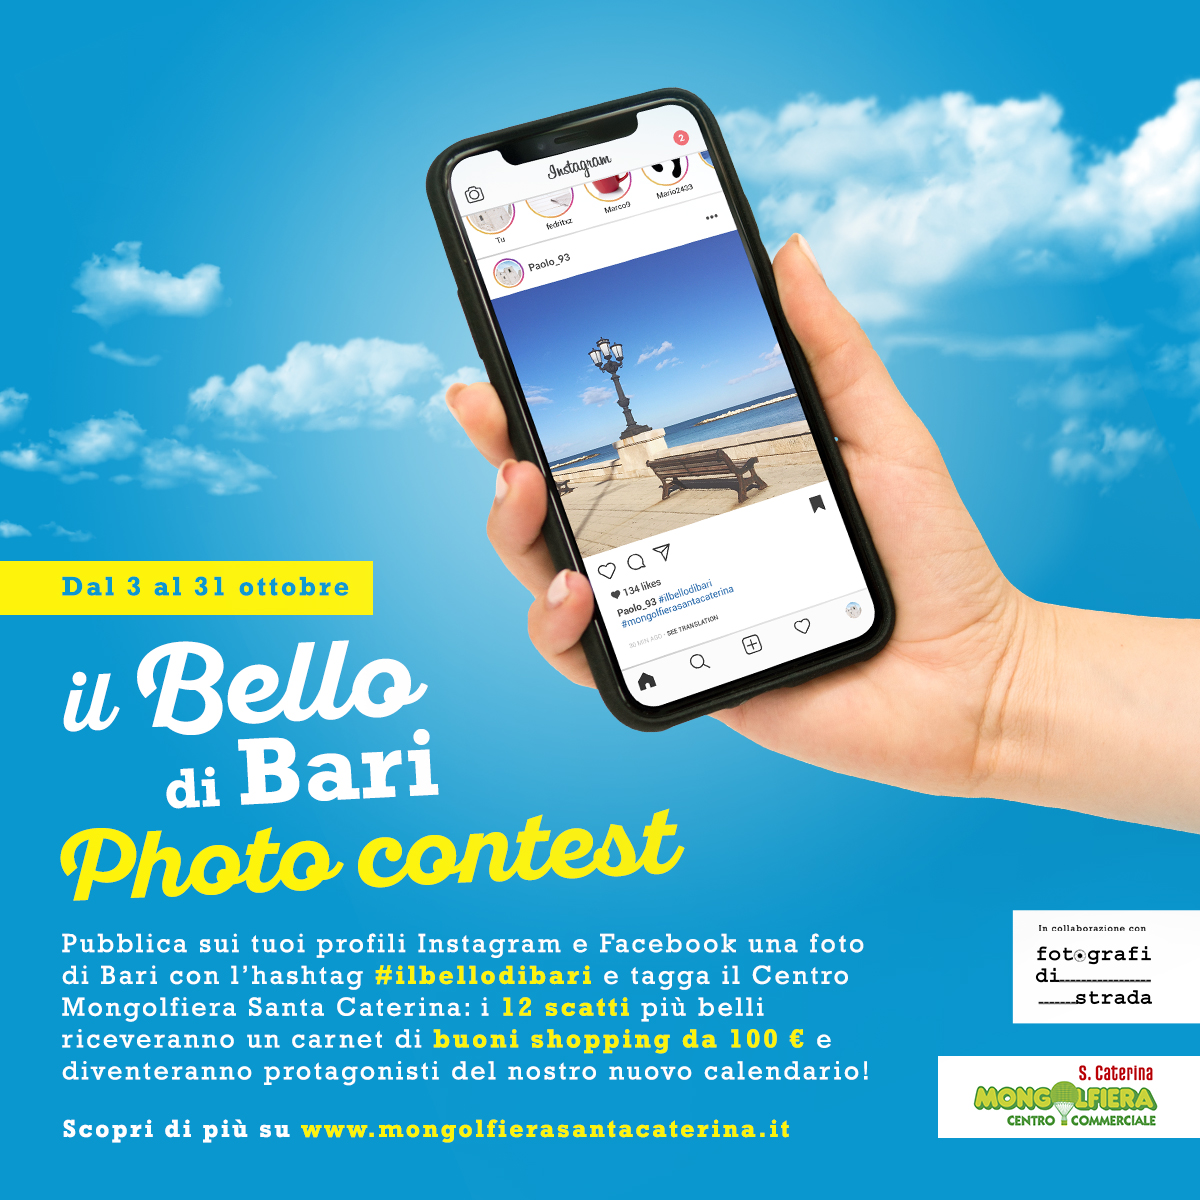 Il bello di Bari - Photo Contest